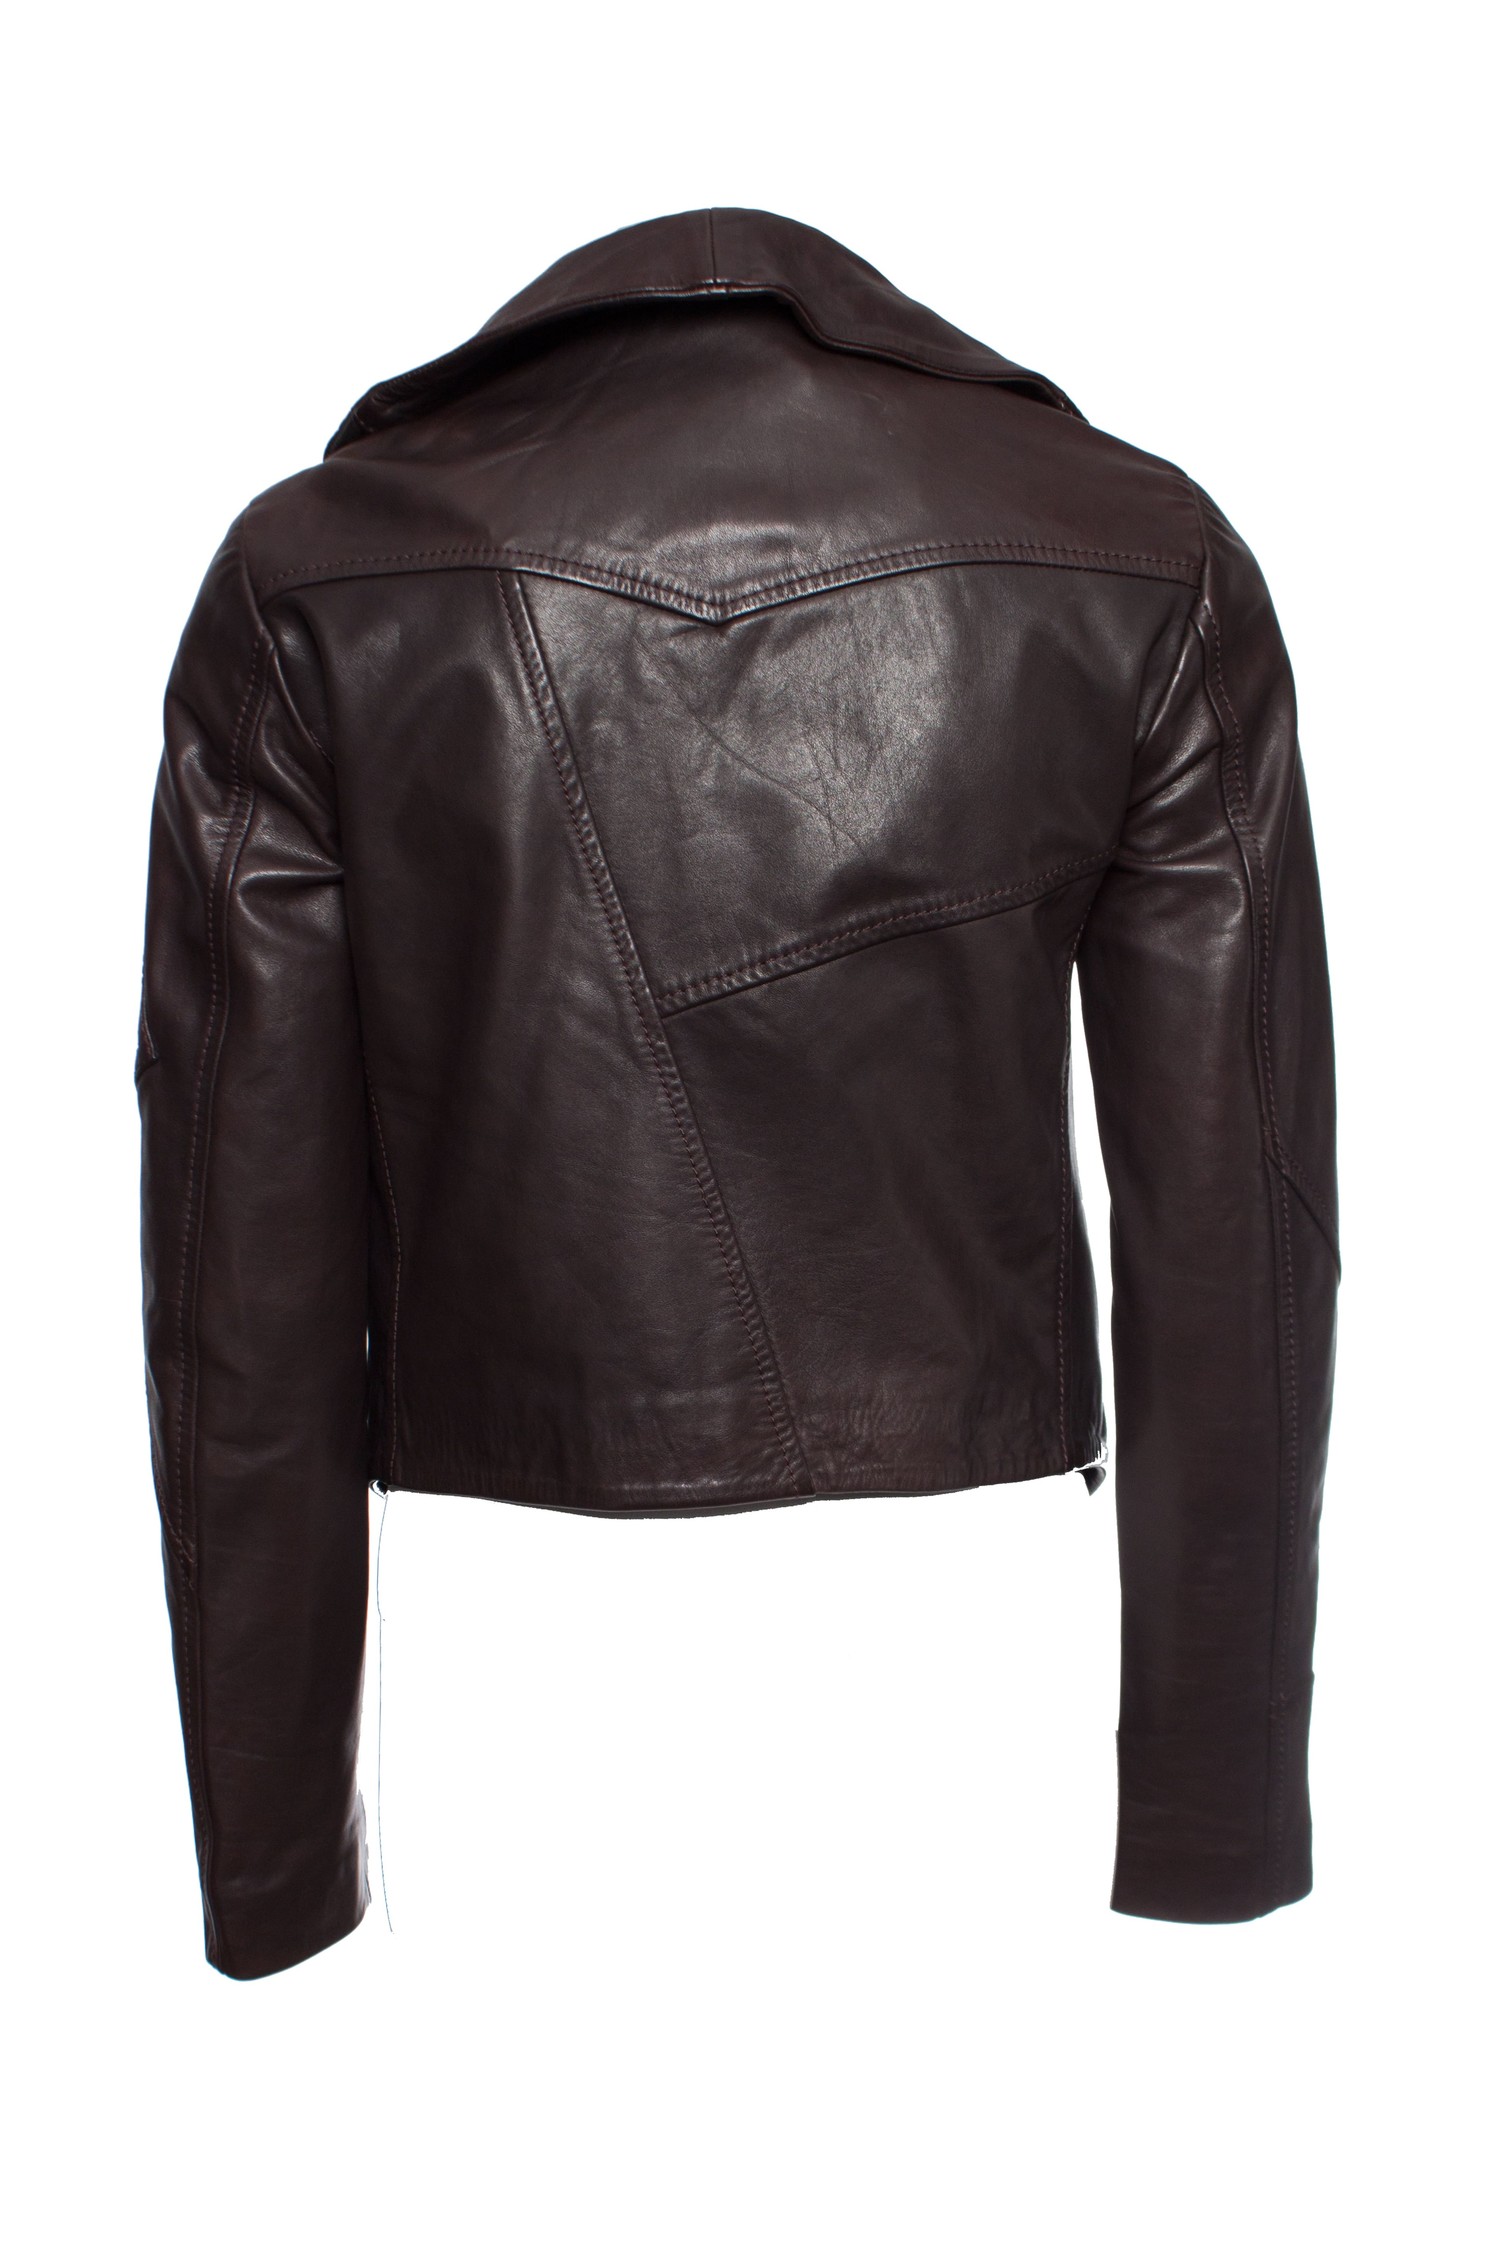 denham leather jacket